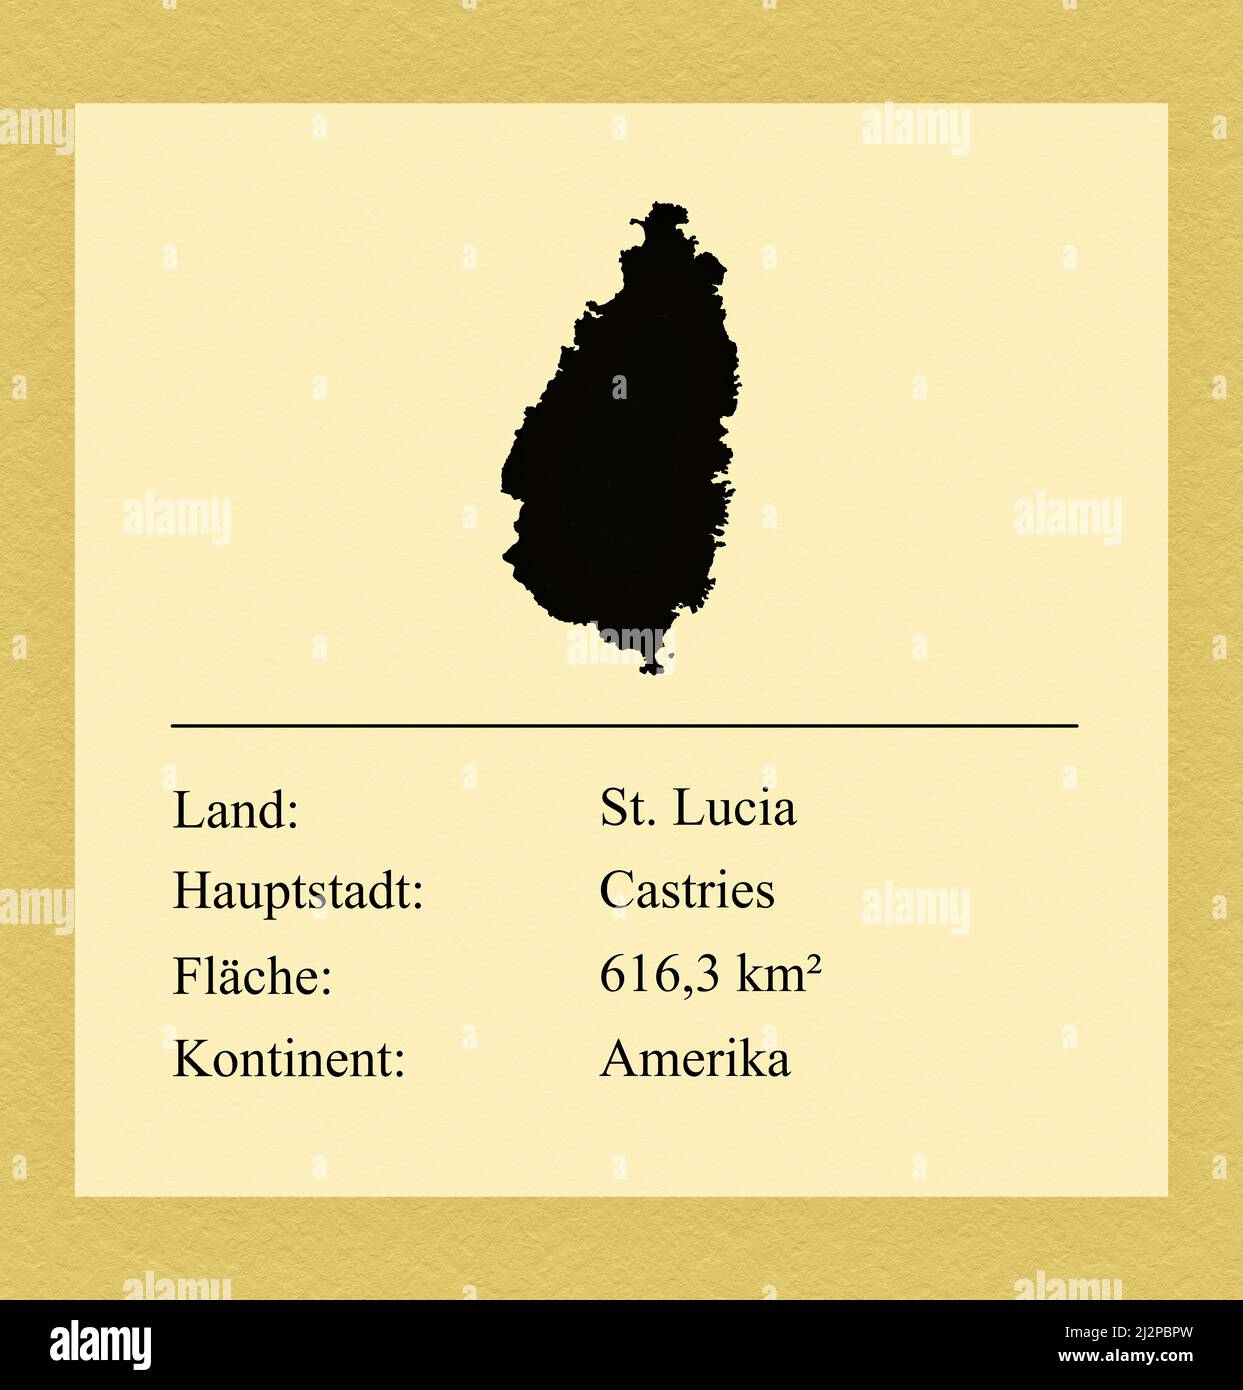 Umrisse des Landes St. Lucia, darunter ein kleiner Steckbrief mit Ländernamen, Hauptstadt, Fläche und Kontinent Foto Stock